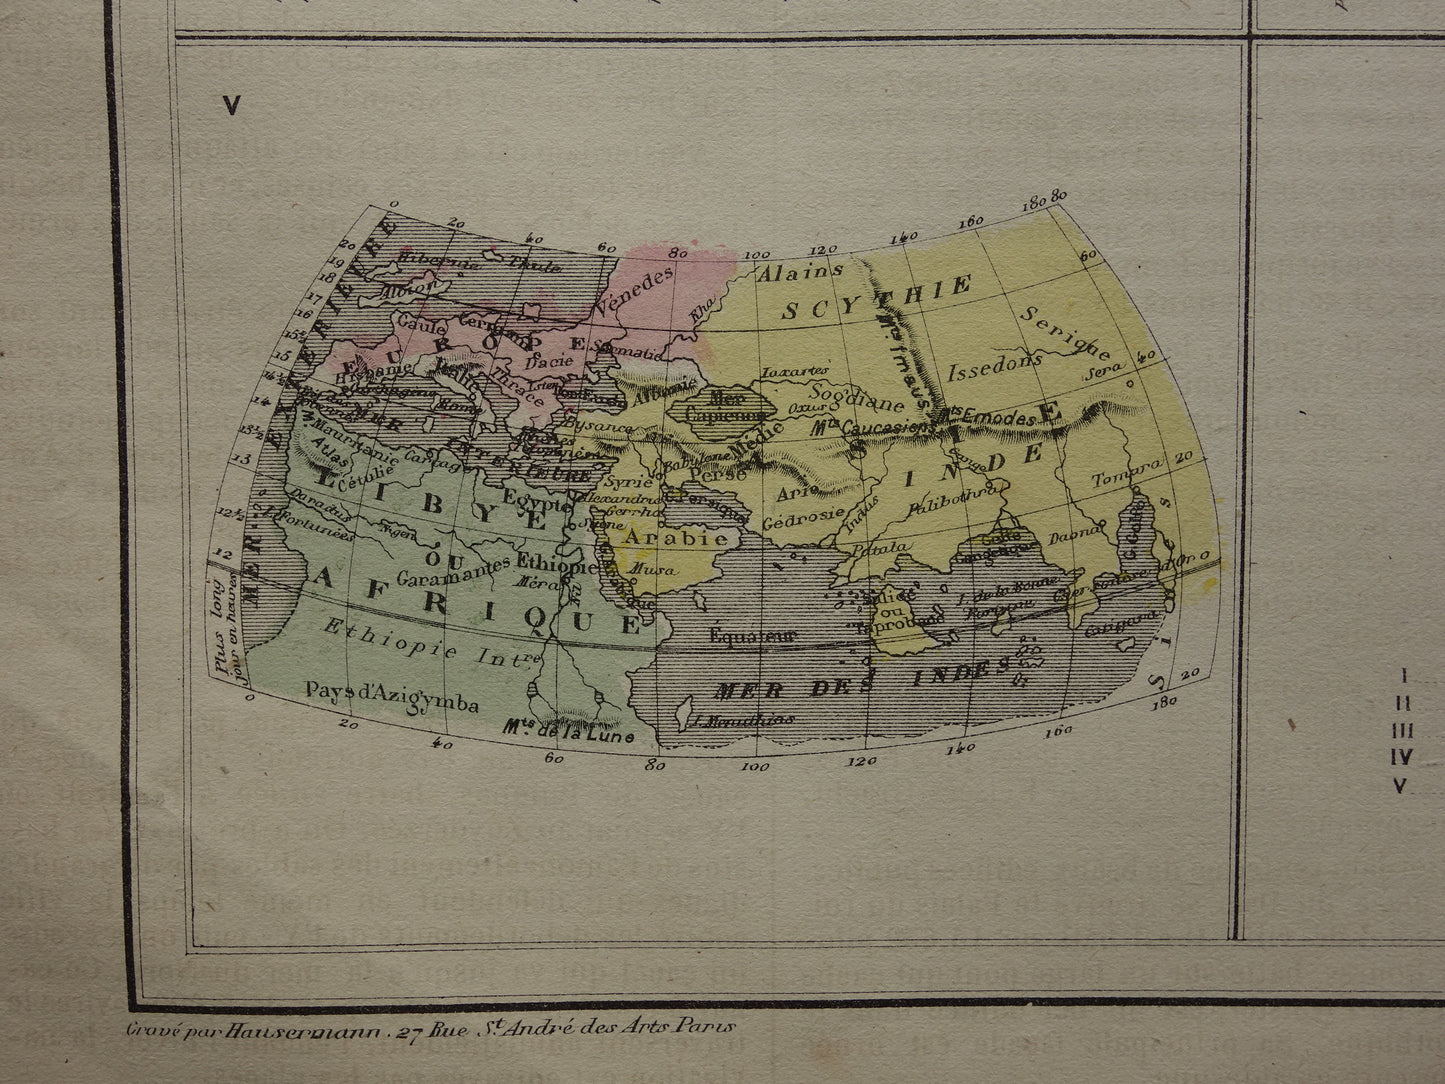 Geschiedenis van cartografie oude kaart van Ptolemaeus Homerus Wereldkaart Antieke Kartografie Aardrijkskunde print Strabo Herodotus